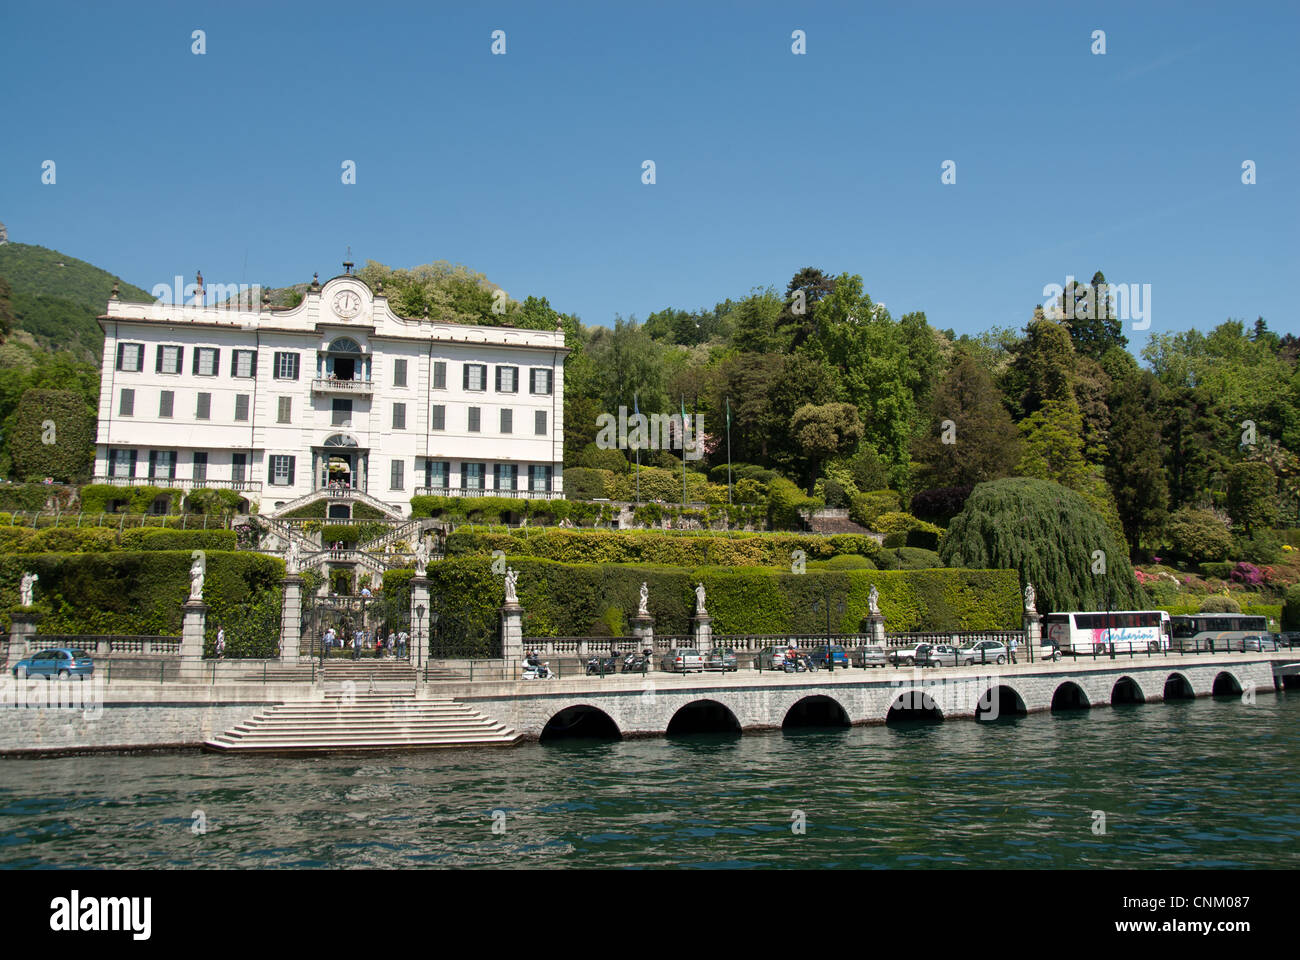 Villa Carlotta, jardin botanique. Le lac de Côme, Italie Banque D'Images